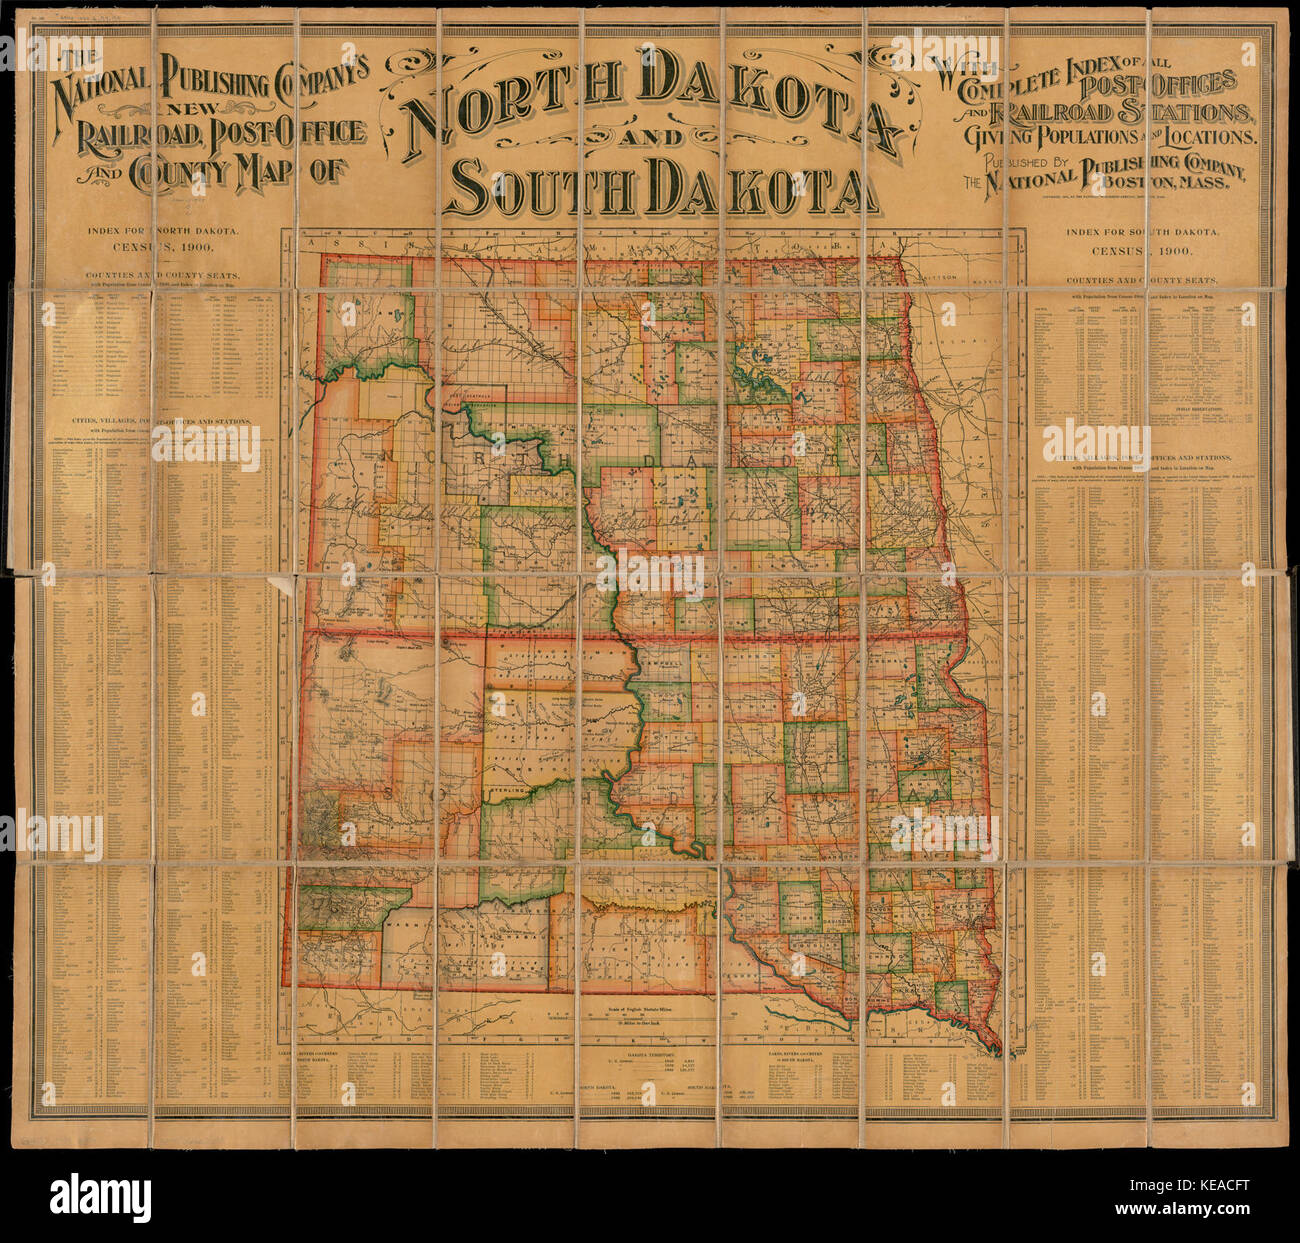 Il National Publishing Company è di nuovo la ferrovia, un ufficio postale e county map di Dakota del Nord e del Sud Dakota con indice completo di tutti gli uffici postali e stazioni ferroviarie, dando alle popolazioni e (10841202634) Foto Stock